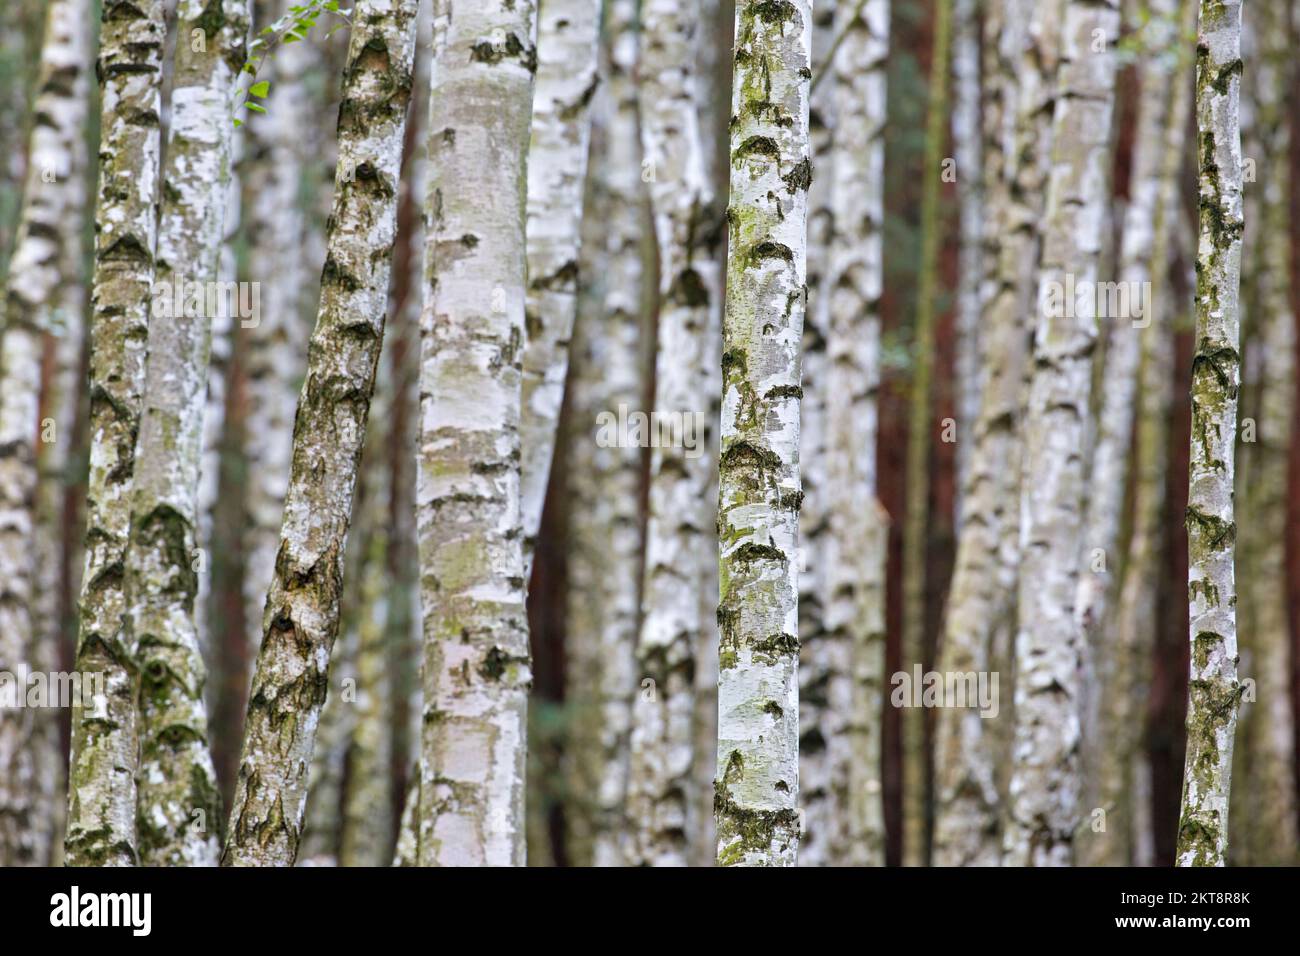 Silberbirke / Warzbirke / Europäische Weißbirke (Betula pendula / Betula verrucosa) Baumstämme von Birken im Laubwald im Herbst Stockfoto